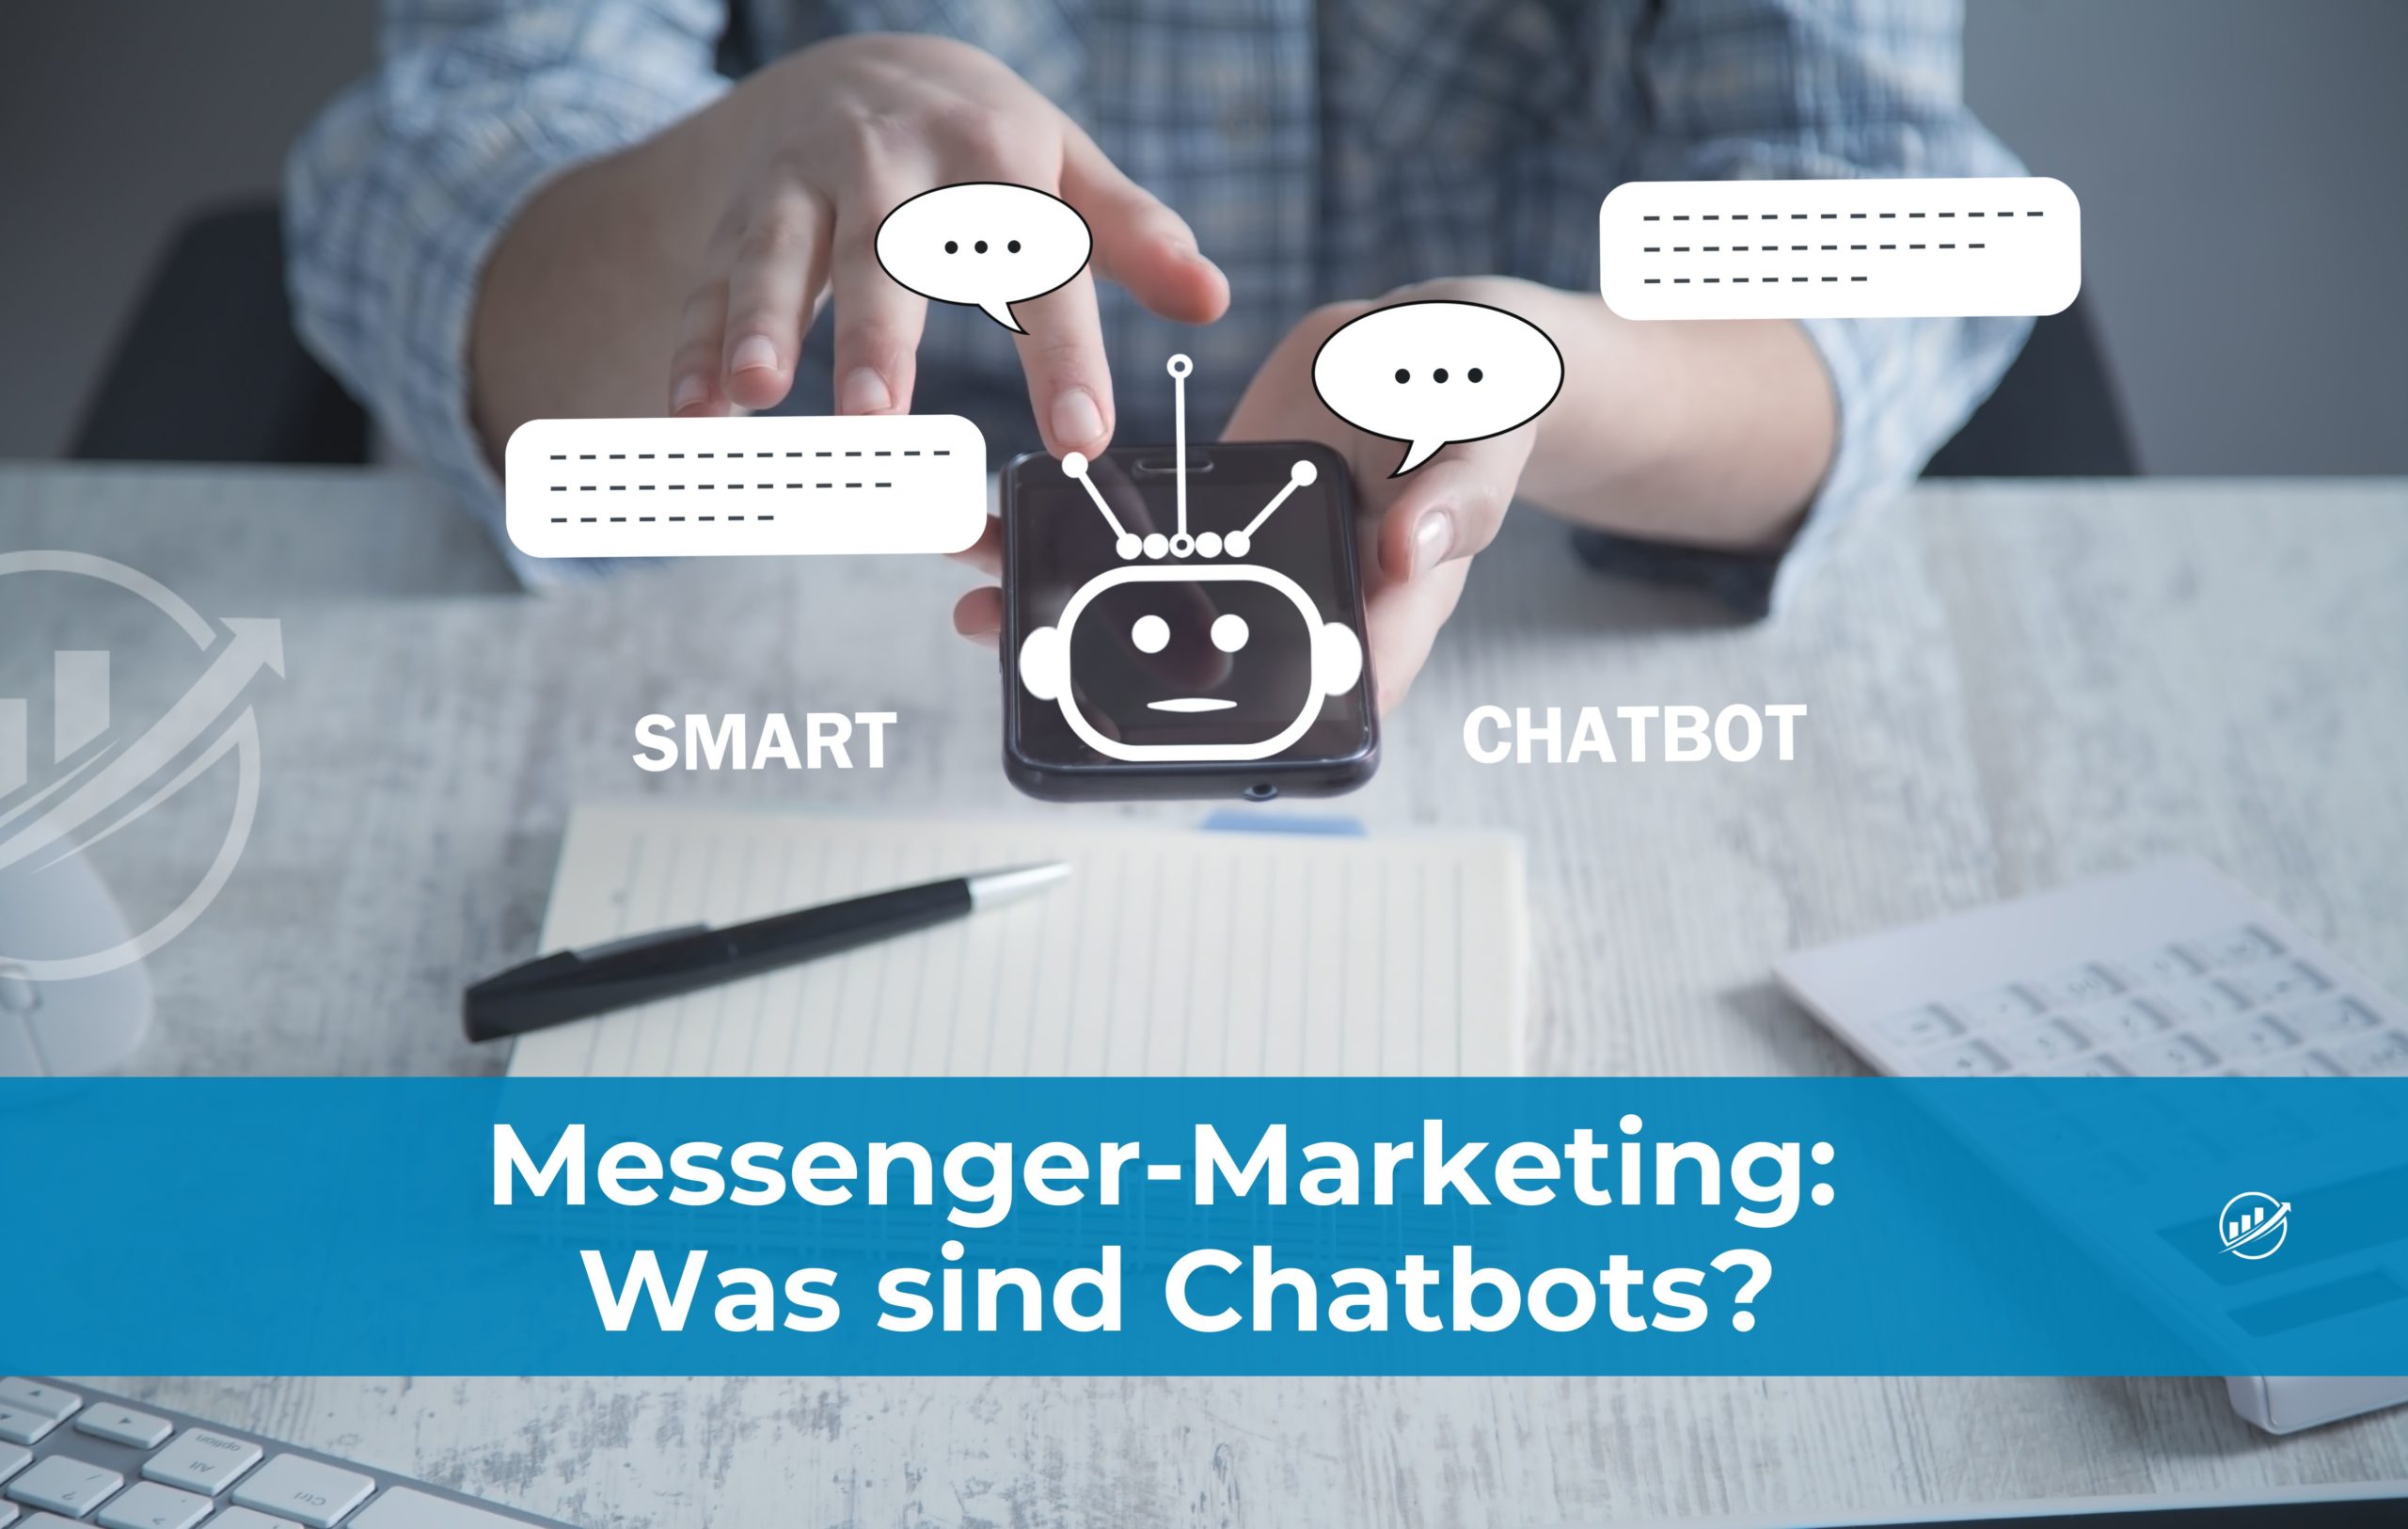 Messenger-Marketing: Was sind Chatbots?